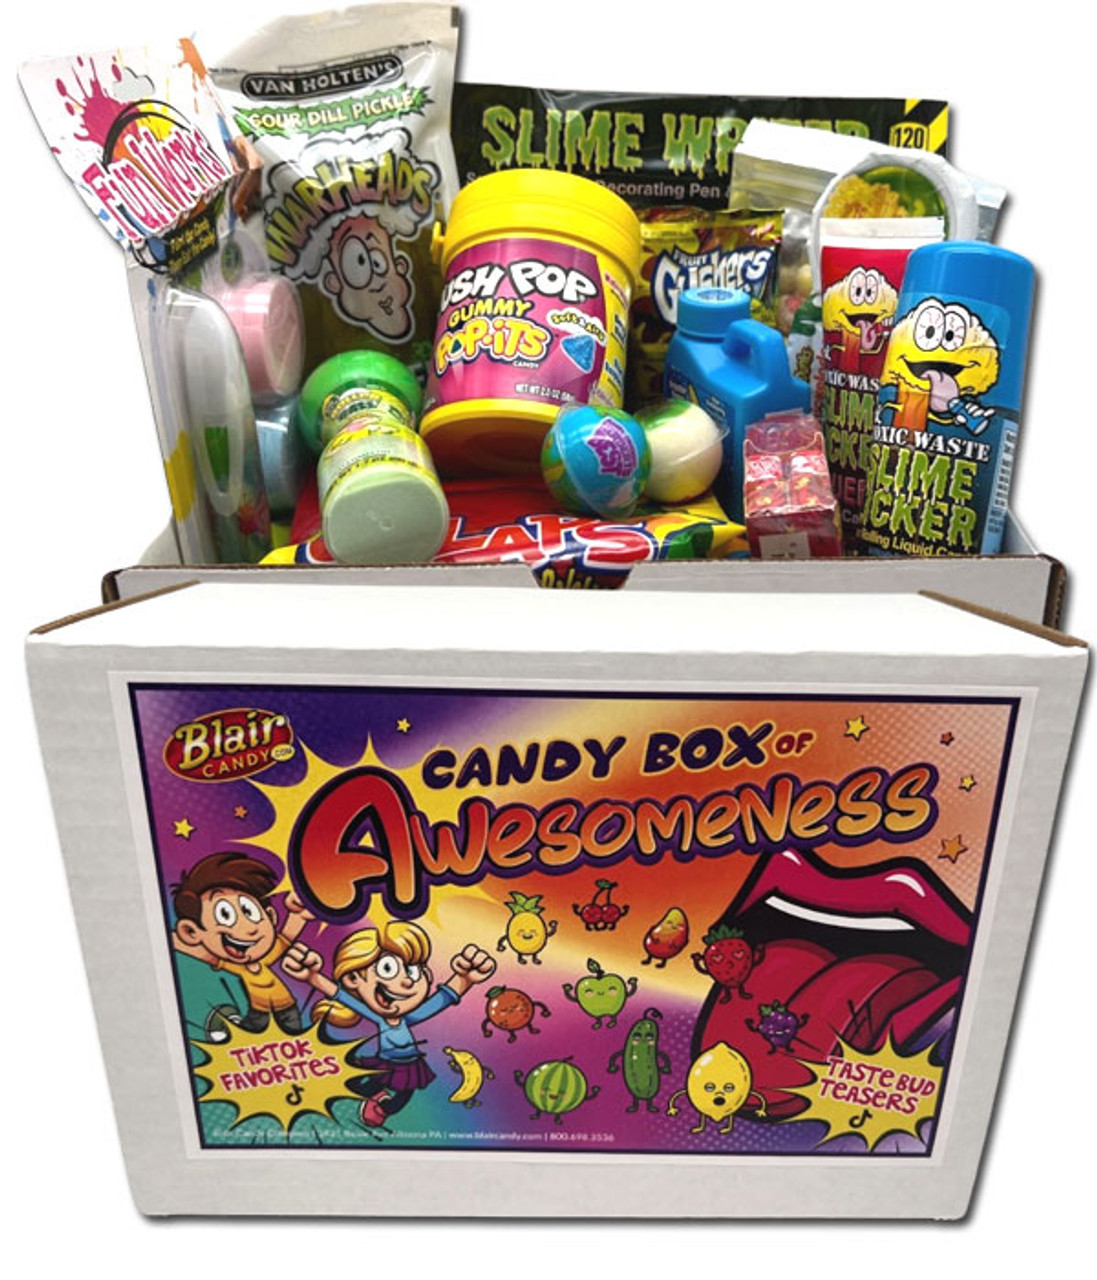 Candy Box of Awesomeness